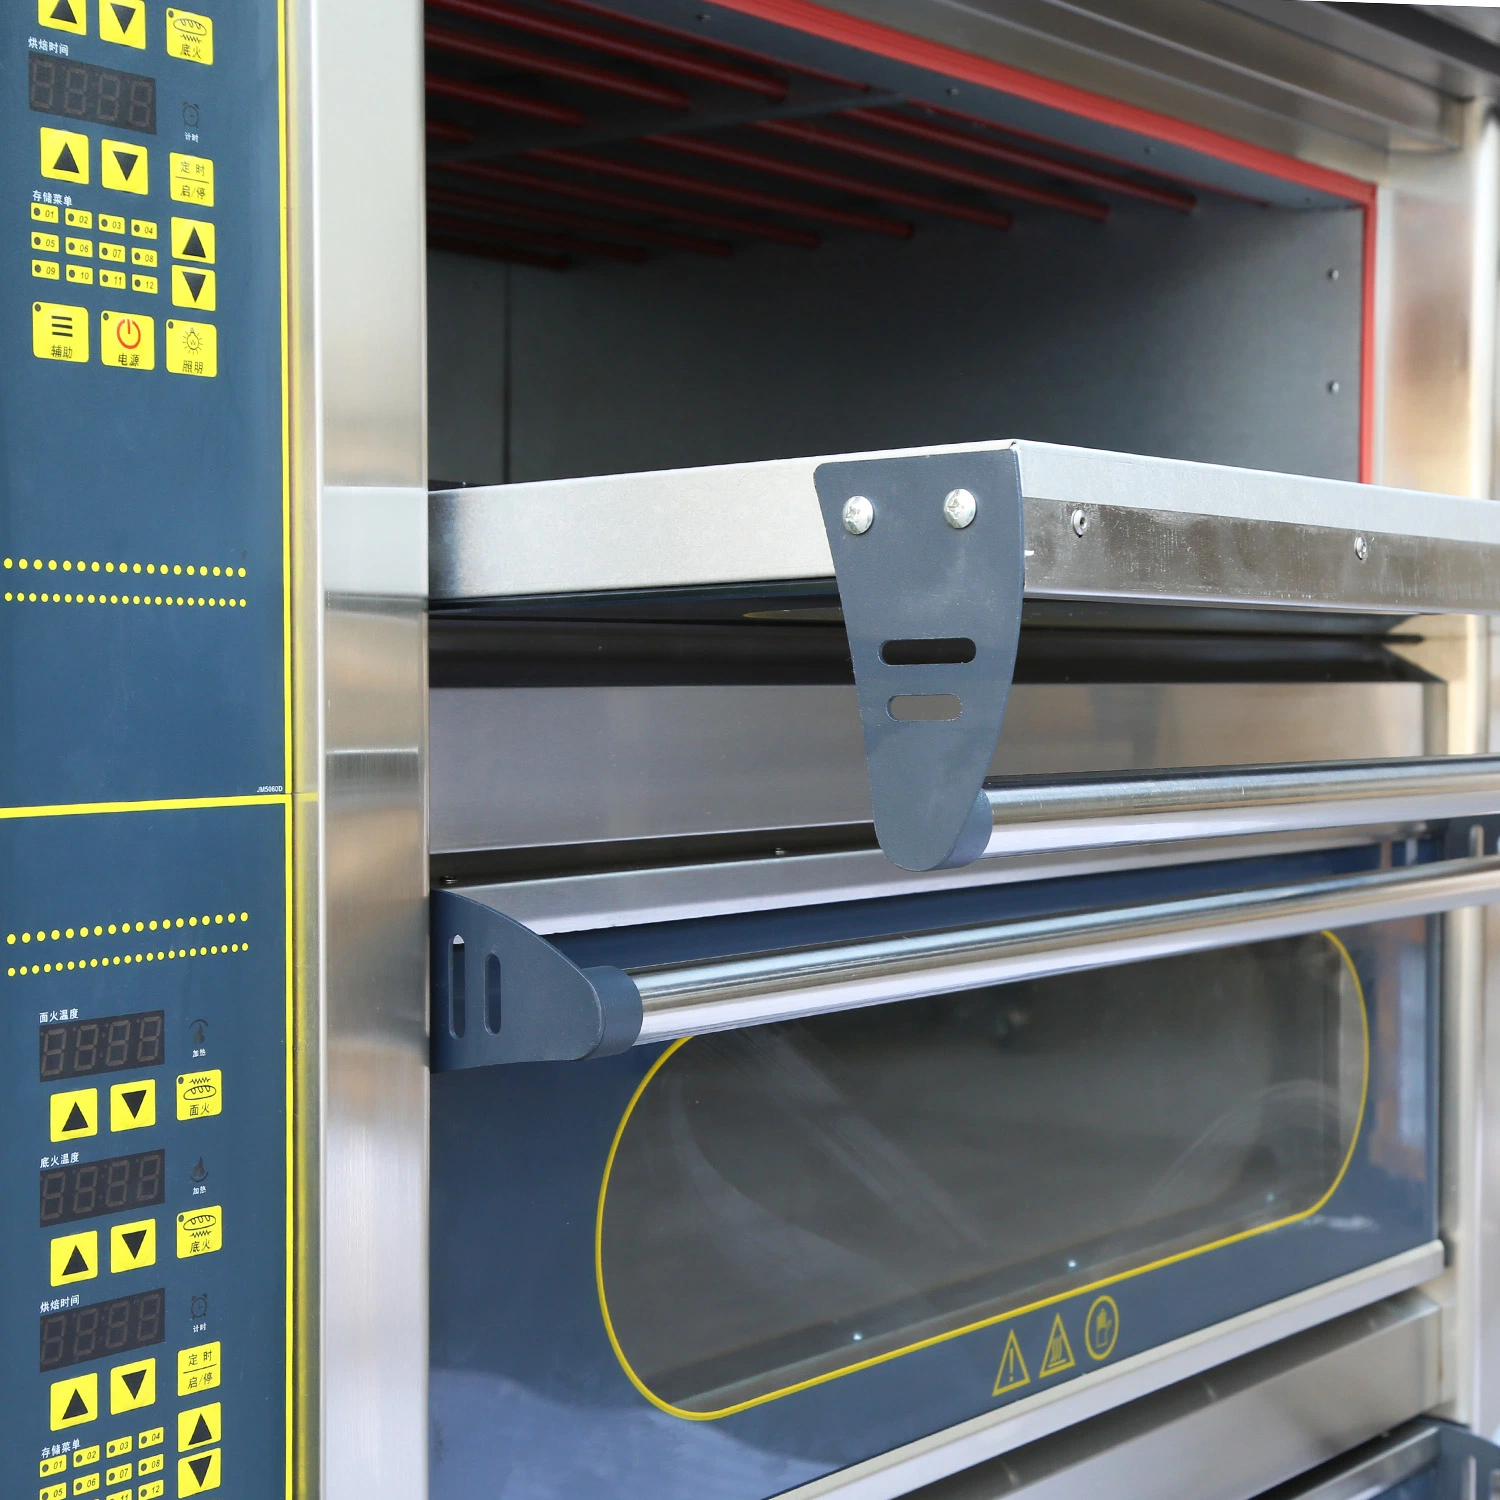 أجهزة التحكم الرقمية التجارية آلة الخبز الطعام 3 المنصة 6 أدراج معدات المطبخ الكهربائية الخاصة بمخبز الفرن الدوار لـ تحميص الخبز وقصه